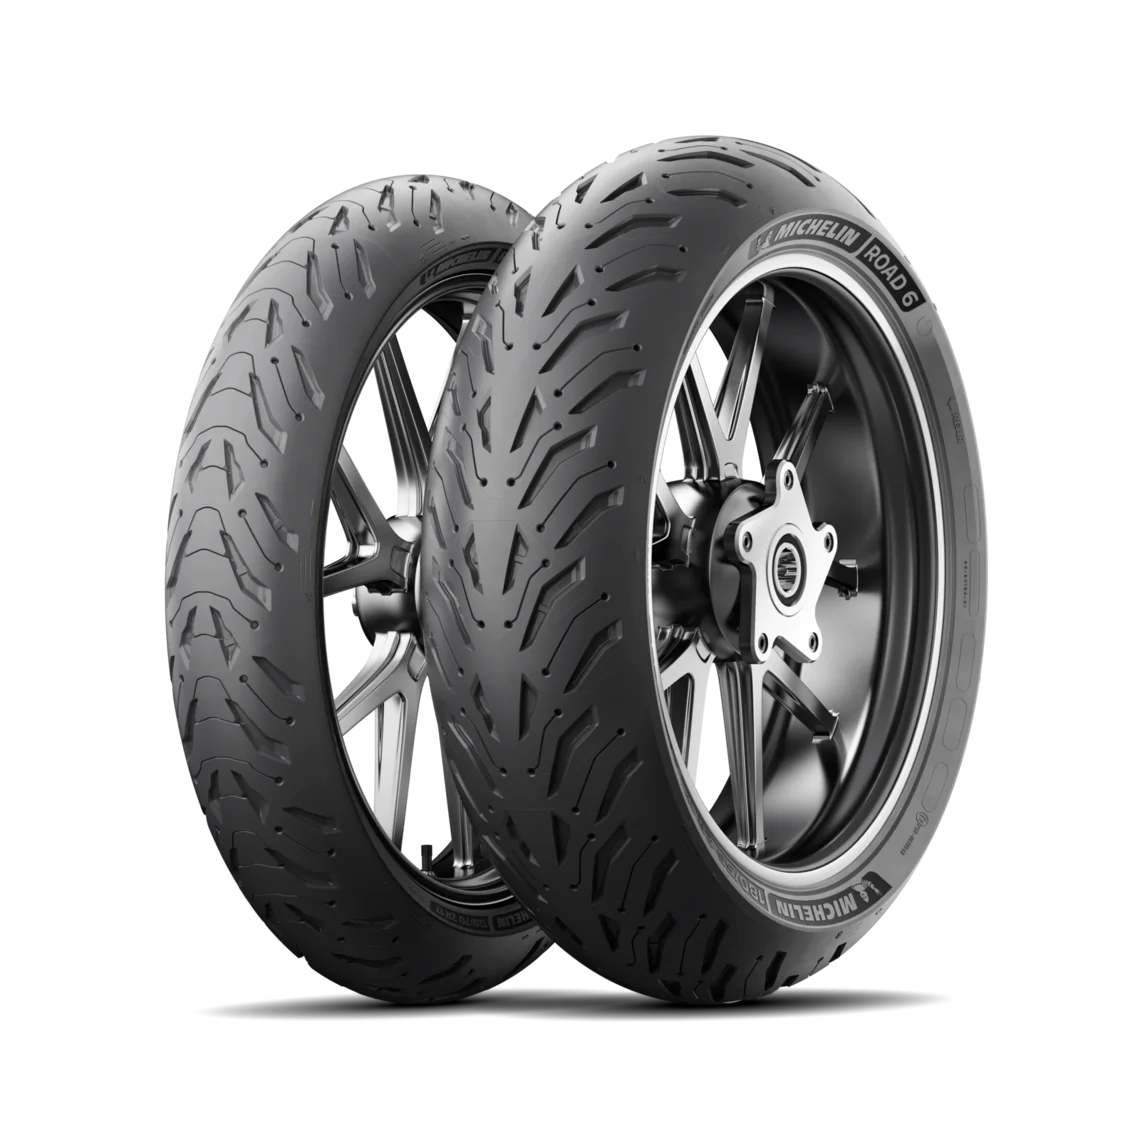 Michelin Michelin 170/60 R17 72W Road6 pneumatici nuovi Estivo 